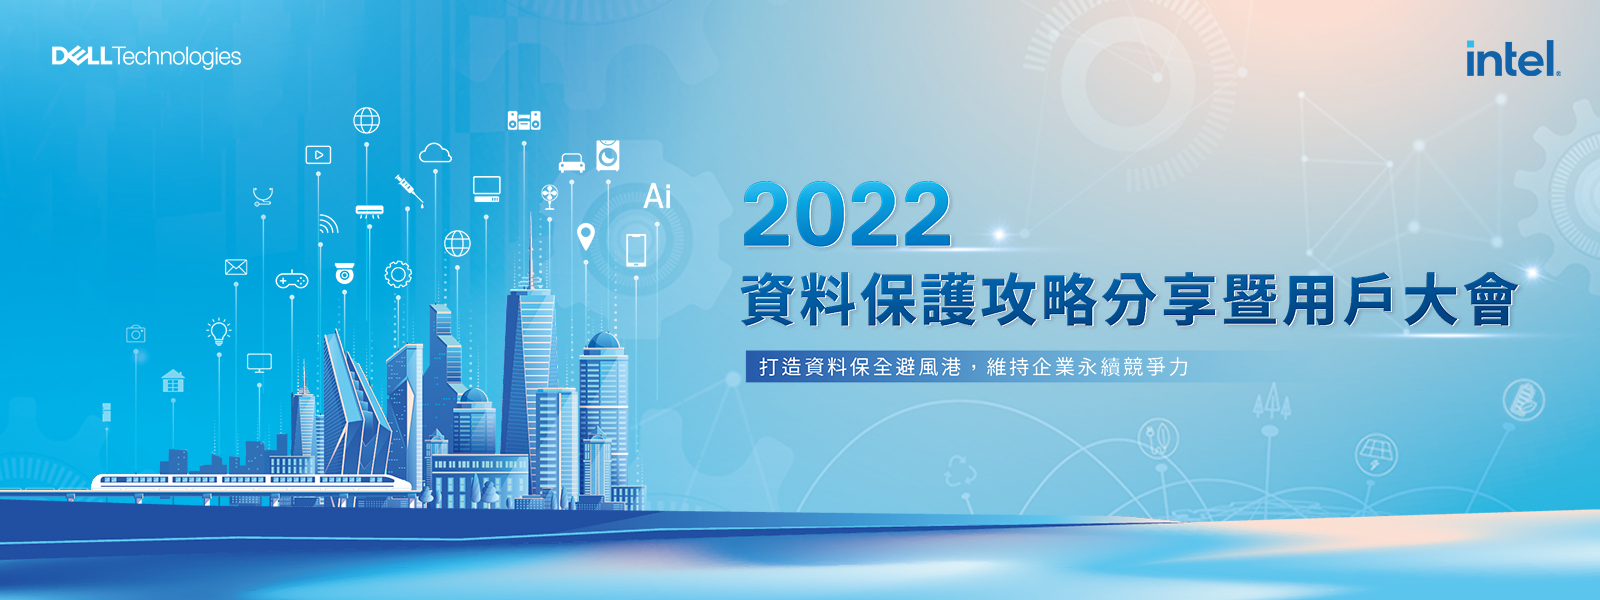 2022 資料保護嘉年華暨用戶大會